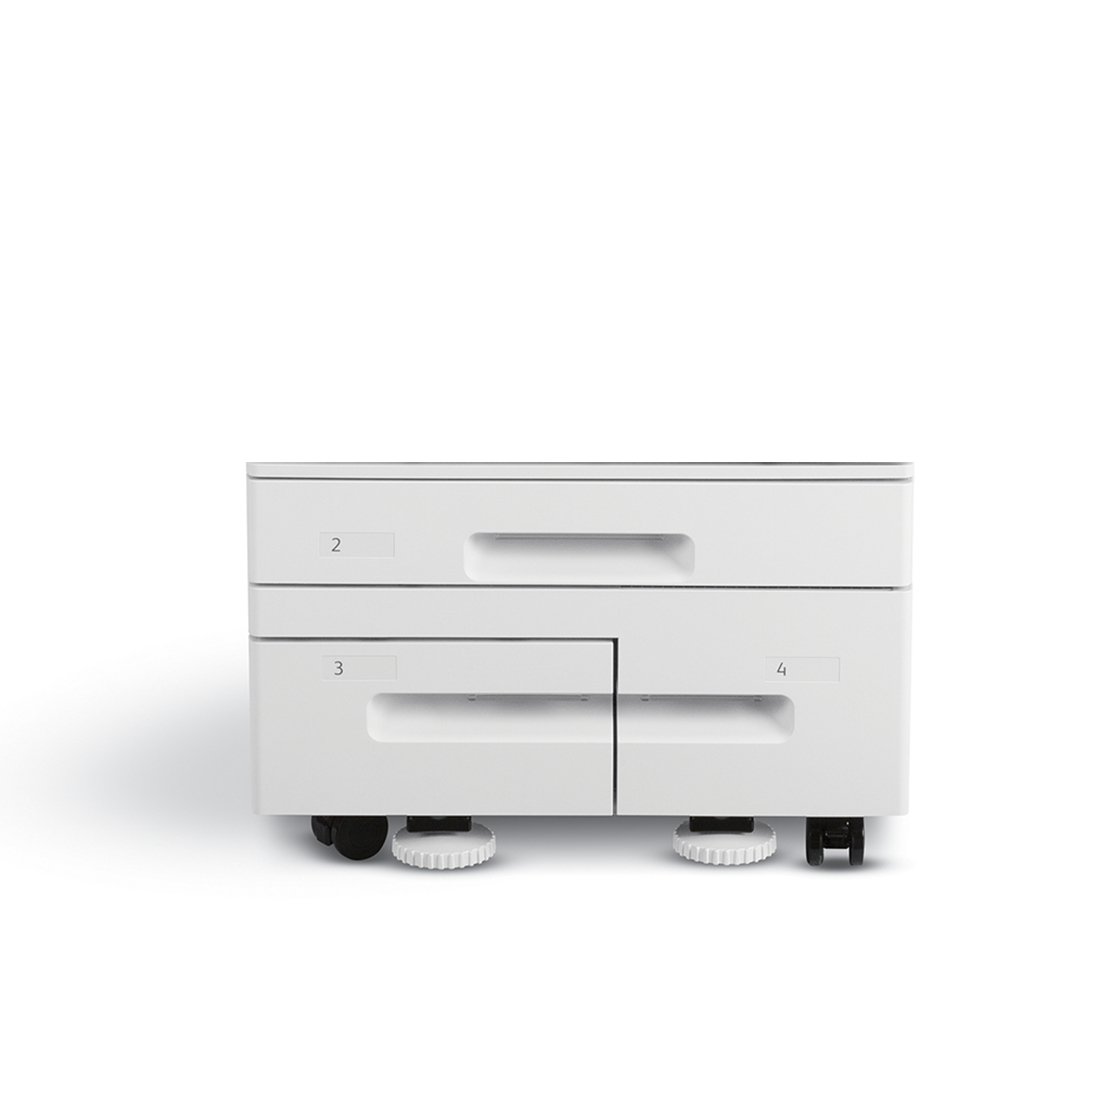 Тандемный модуль большой емкости, Xerox, 097S04909, для настольной конфигурации, 520 листов А3 + 200